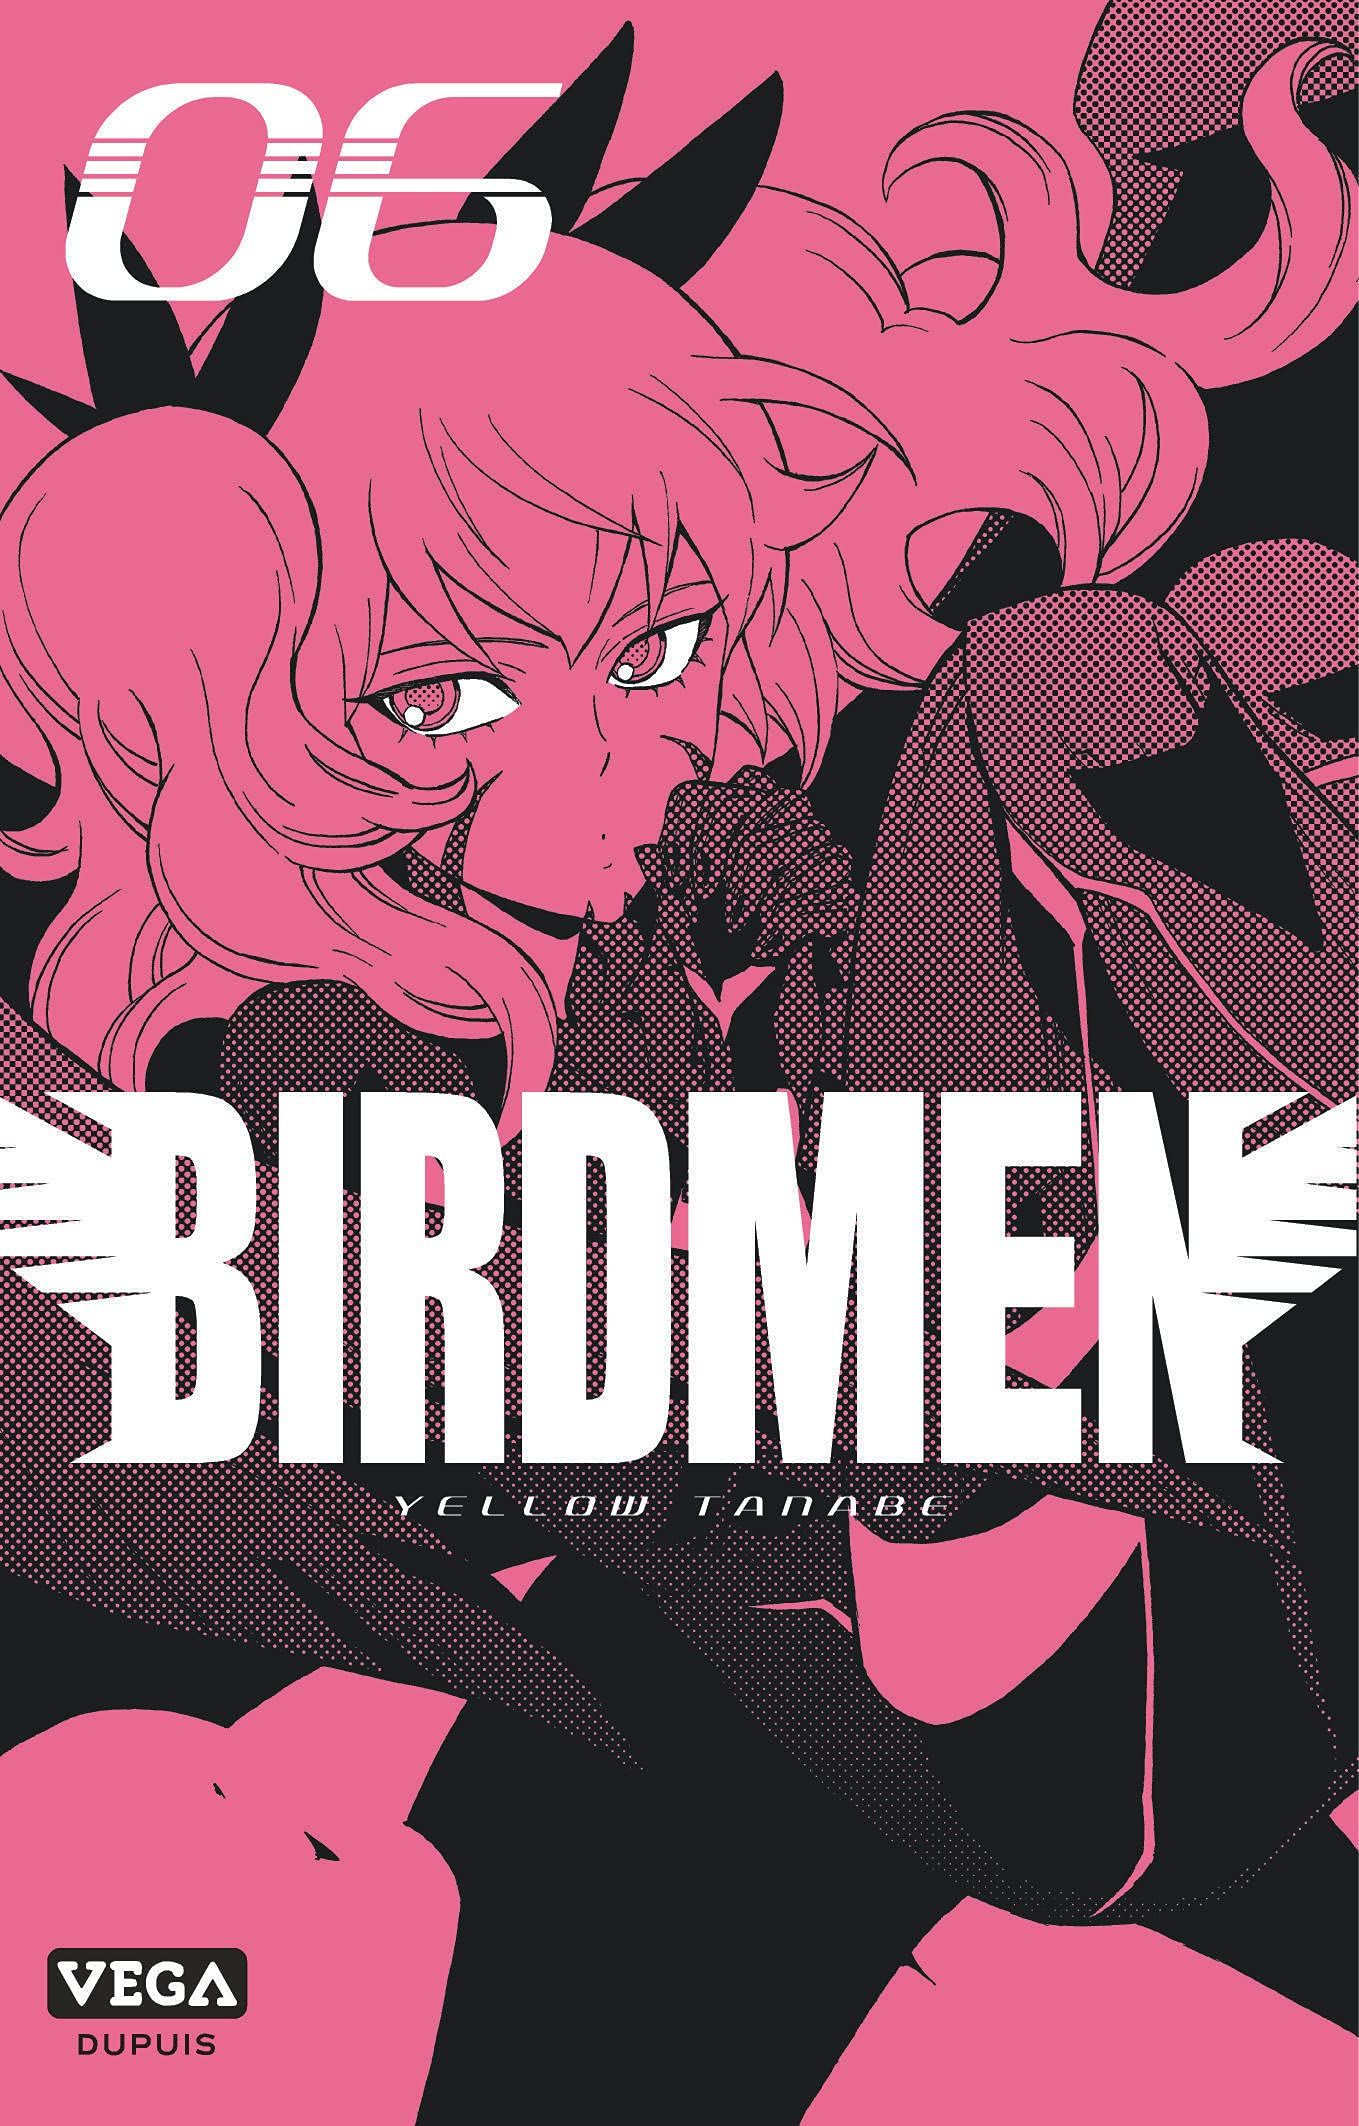 Birdmen Vol.6